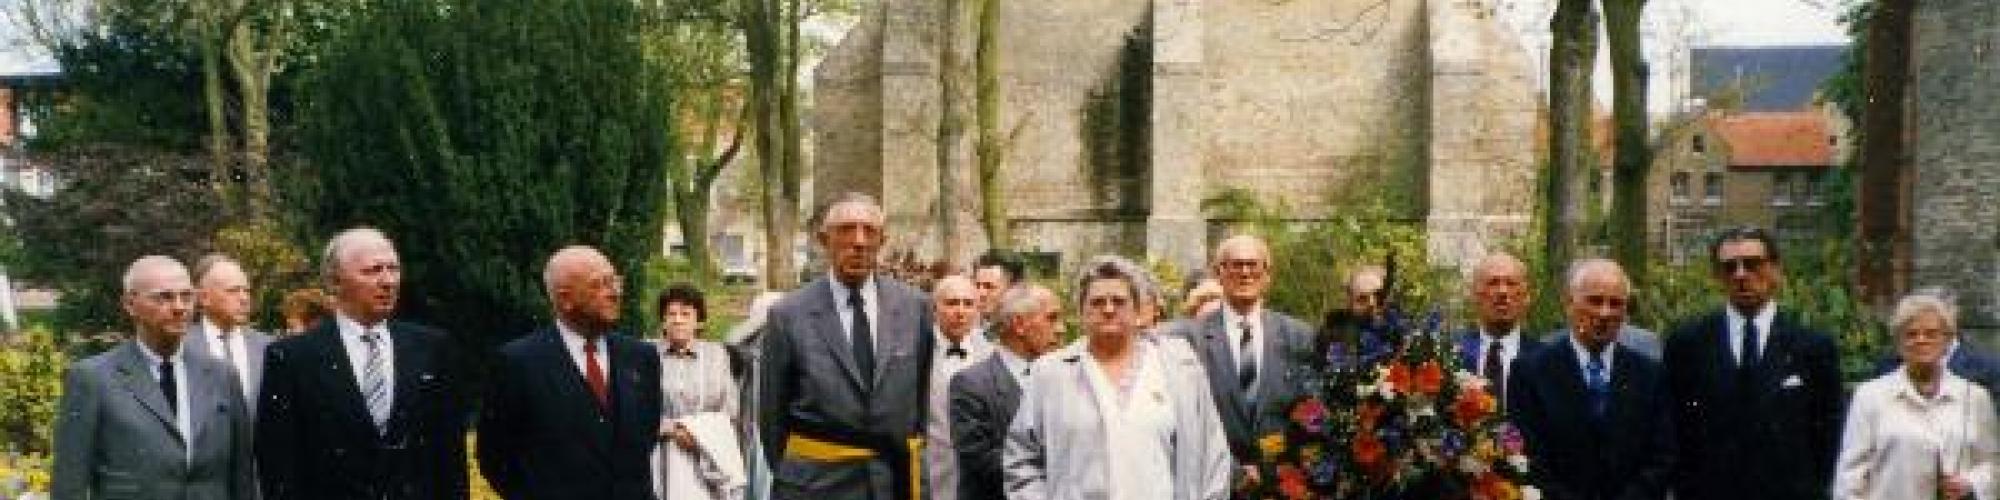 Photo n°426827, Furnes, cérémonie aux disparus de 40-45 à l'occasion de l'inauguration du nouveau drapeau USRA - West Vlaanderen, Fonds des Archives du Front de l'Indépendance, CegeSoma/Archives de l'Etat